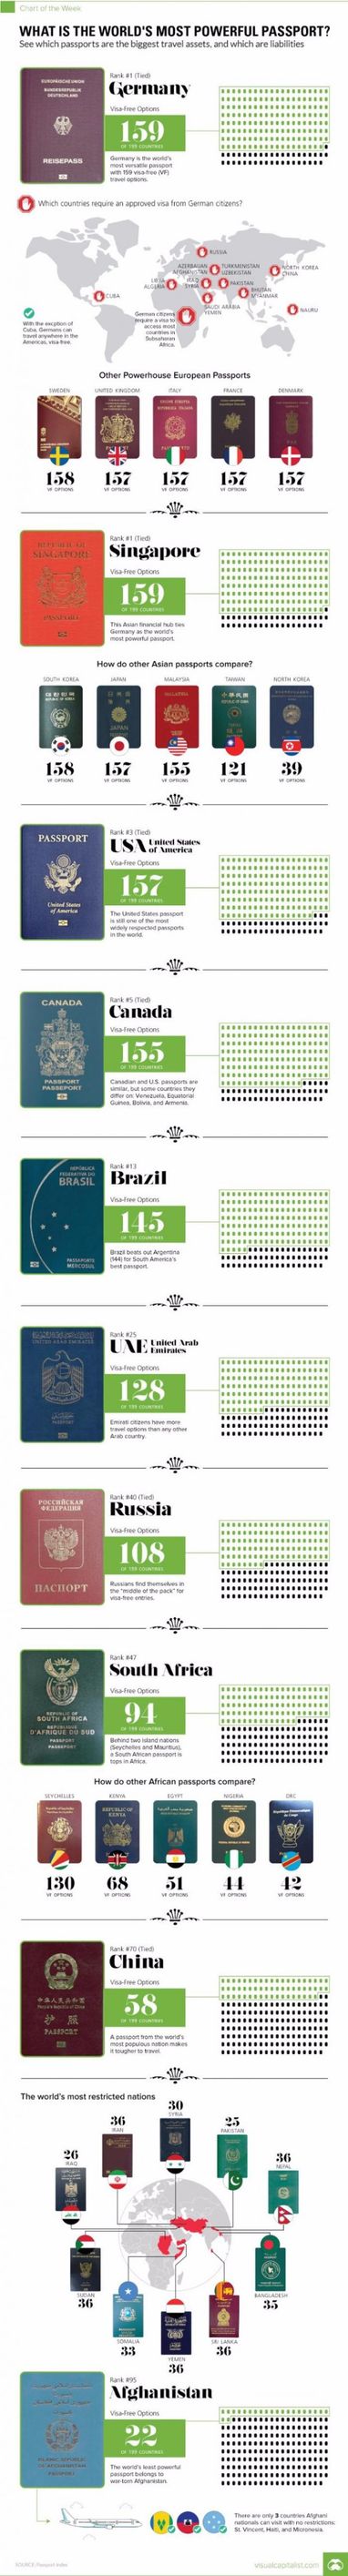 Названы самые влиятельные паспорта мира (инфографика)